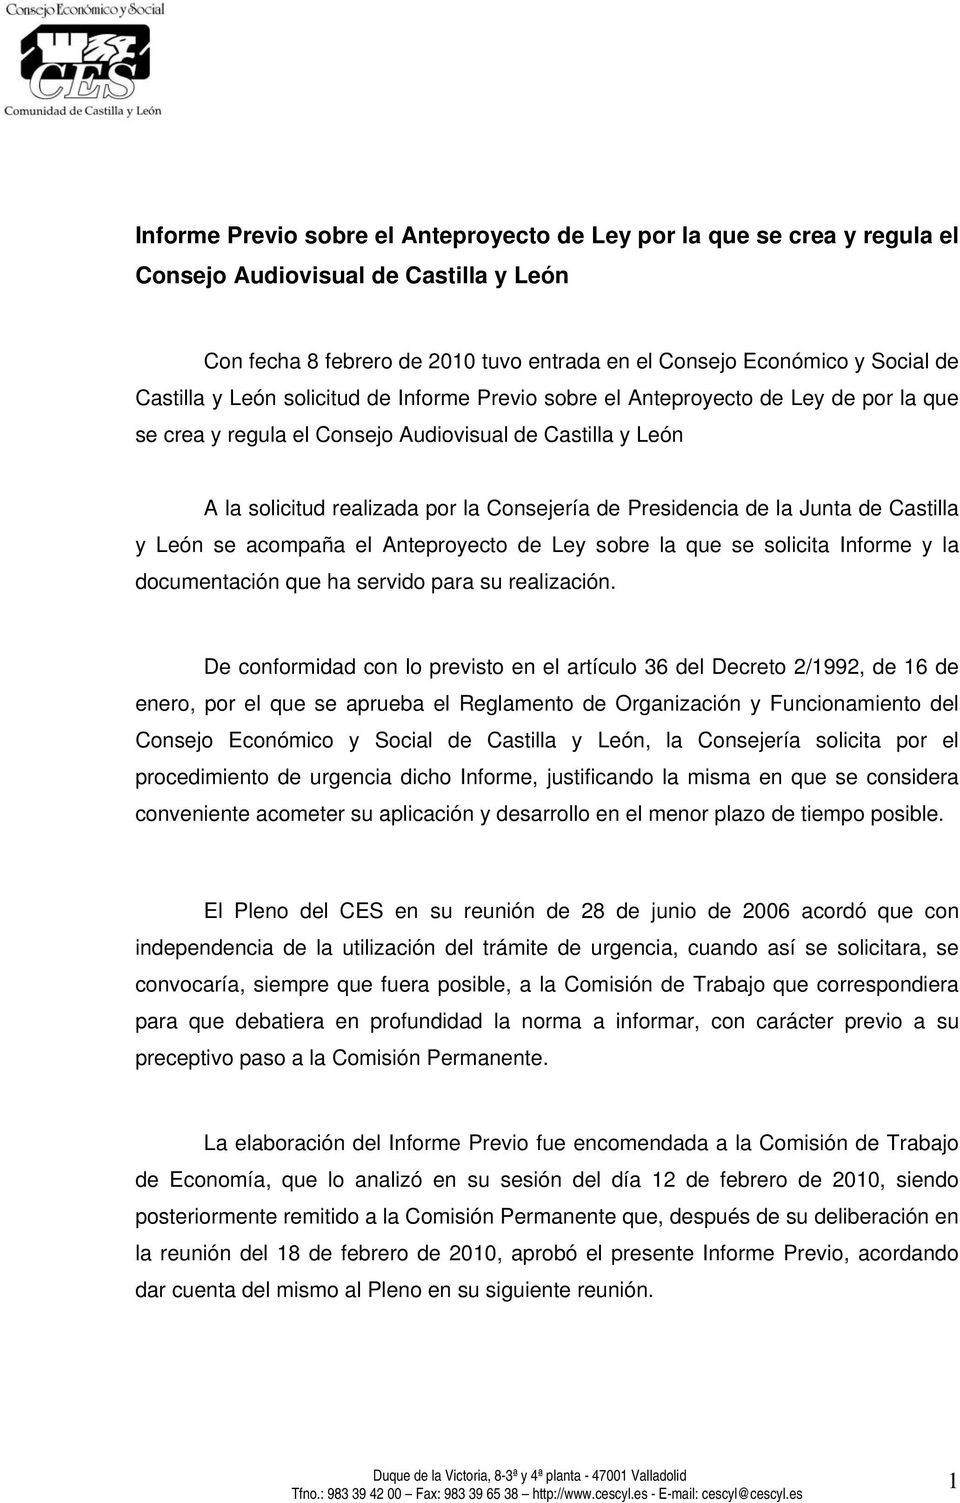 la Junta de Castilla y León se acompaña el Anteproyecto de Ley sobre la que se solicita Informe y la documentación que ha servido para su realización.